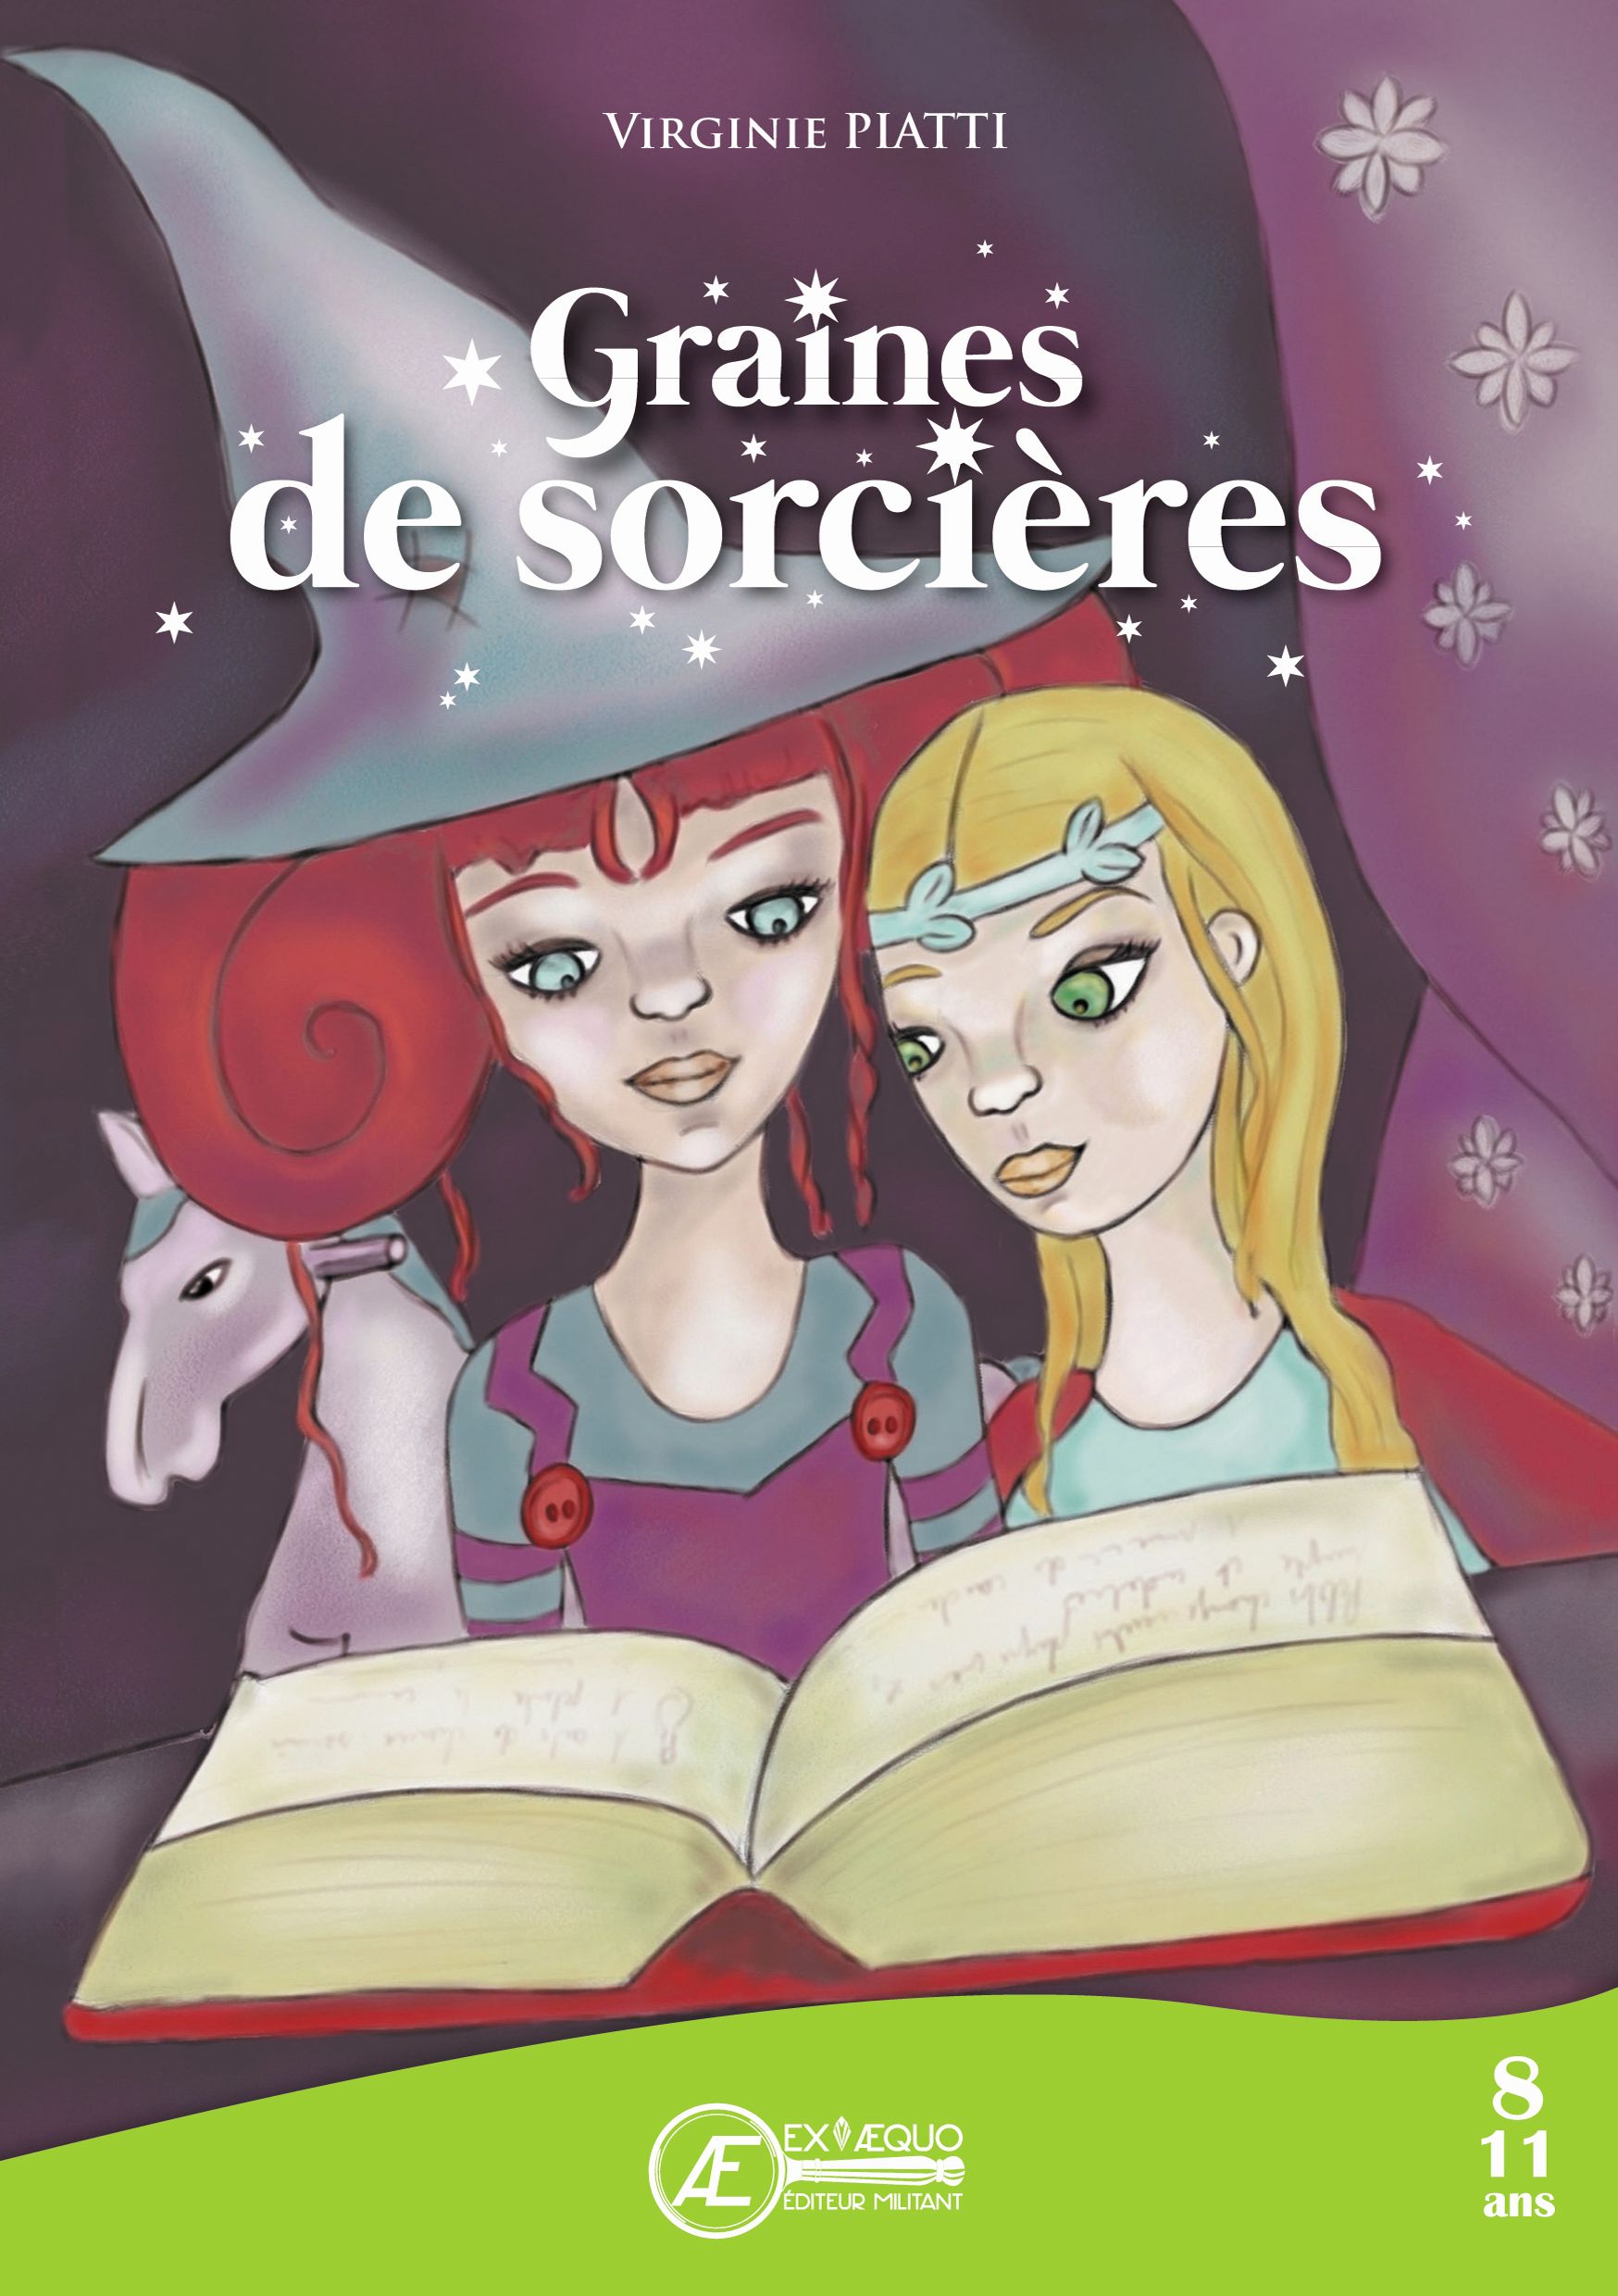 You are currently viewing Graines de sorcières, de Virginie Piatti